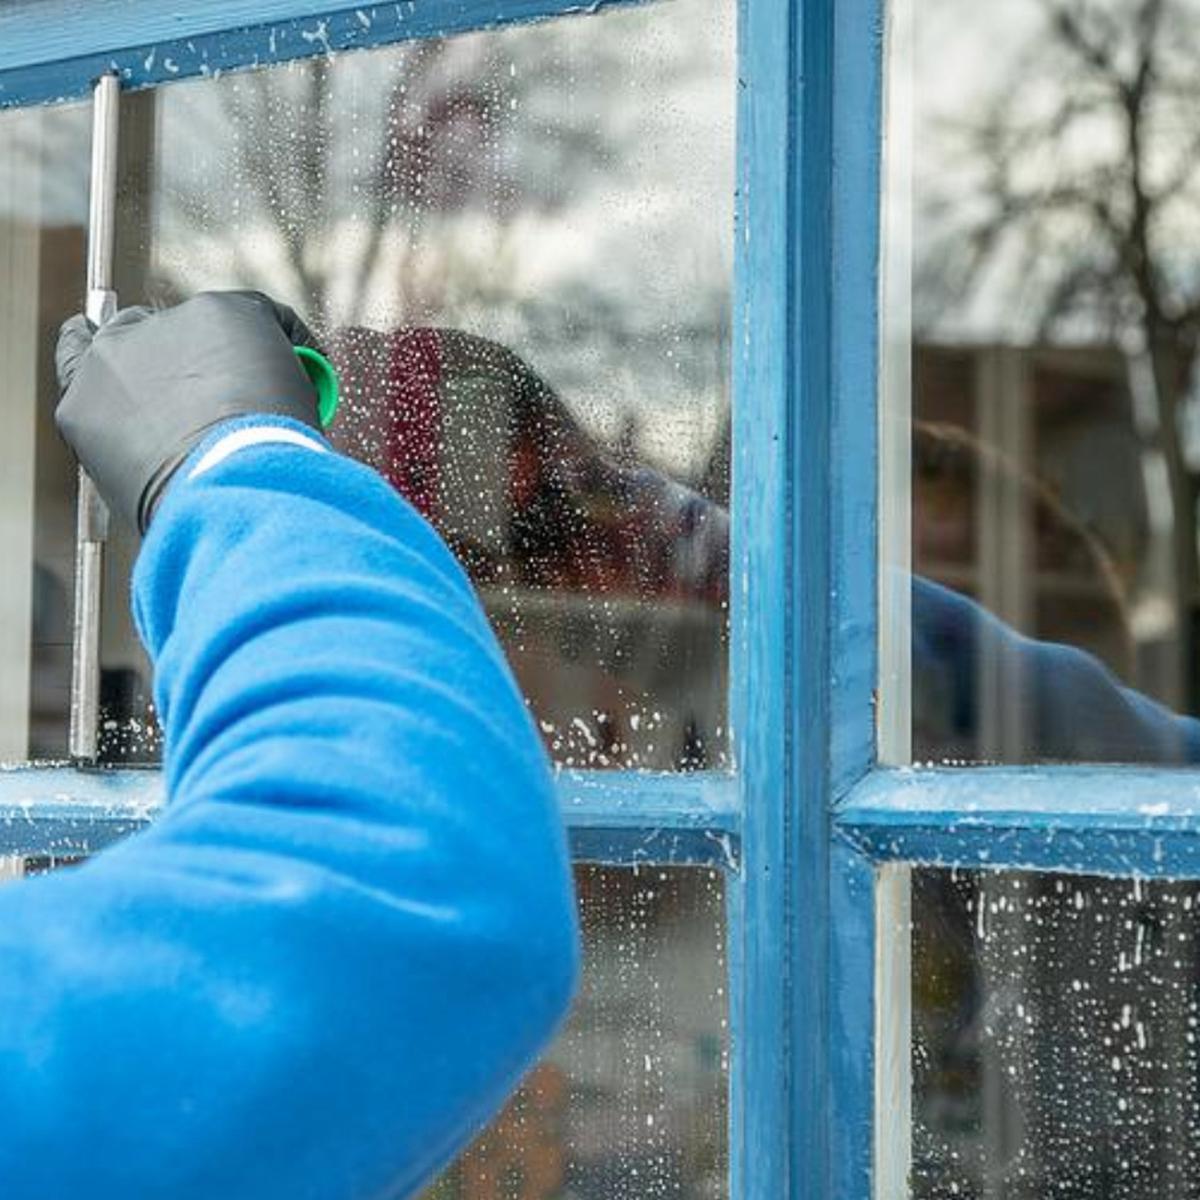 Trucos caseros de limpieza: cómo dejar los vidrios impecables, Life hacks, RESPUESTAS